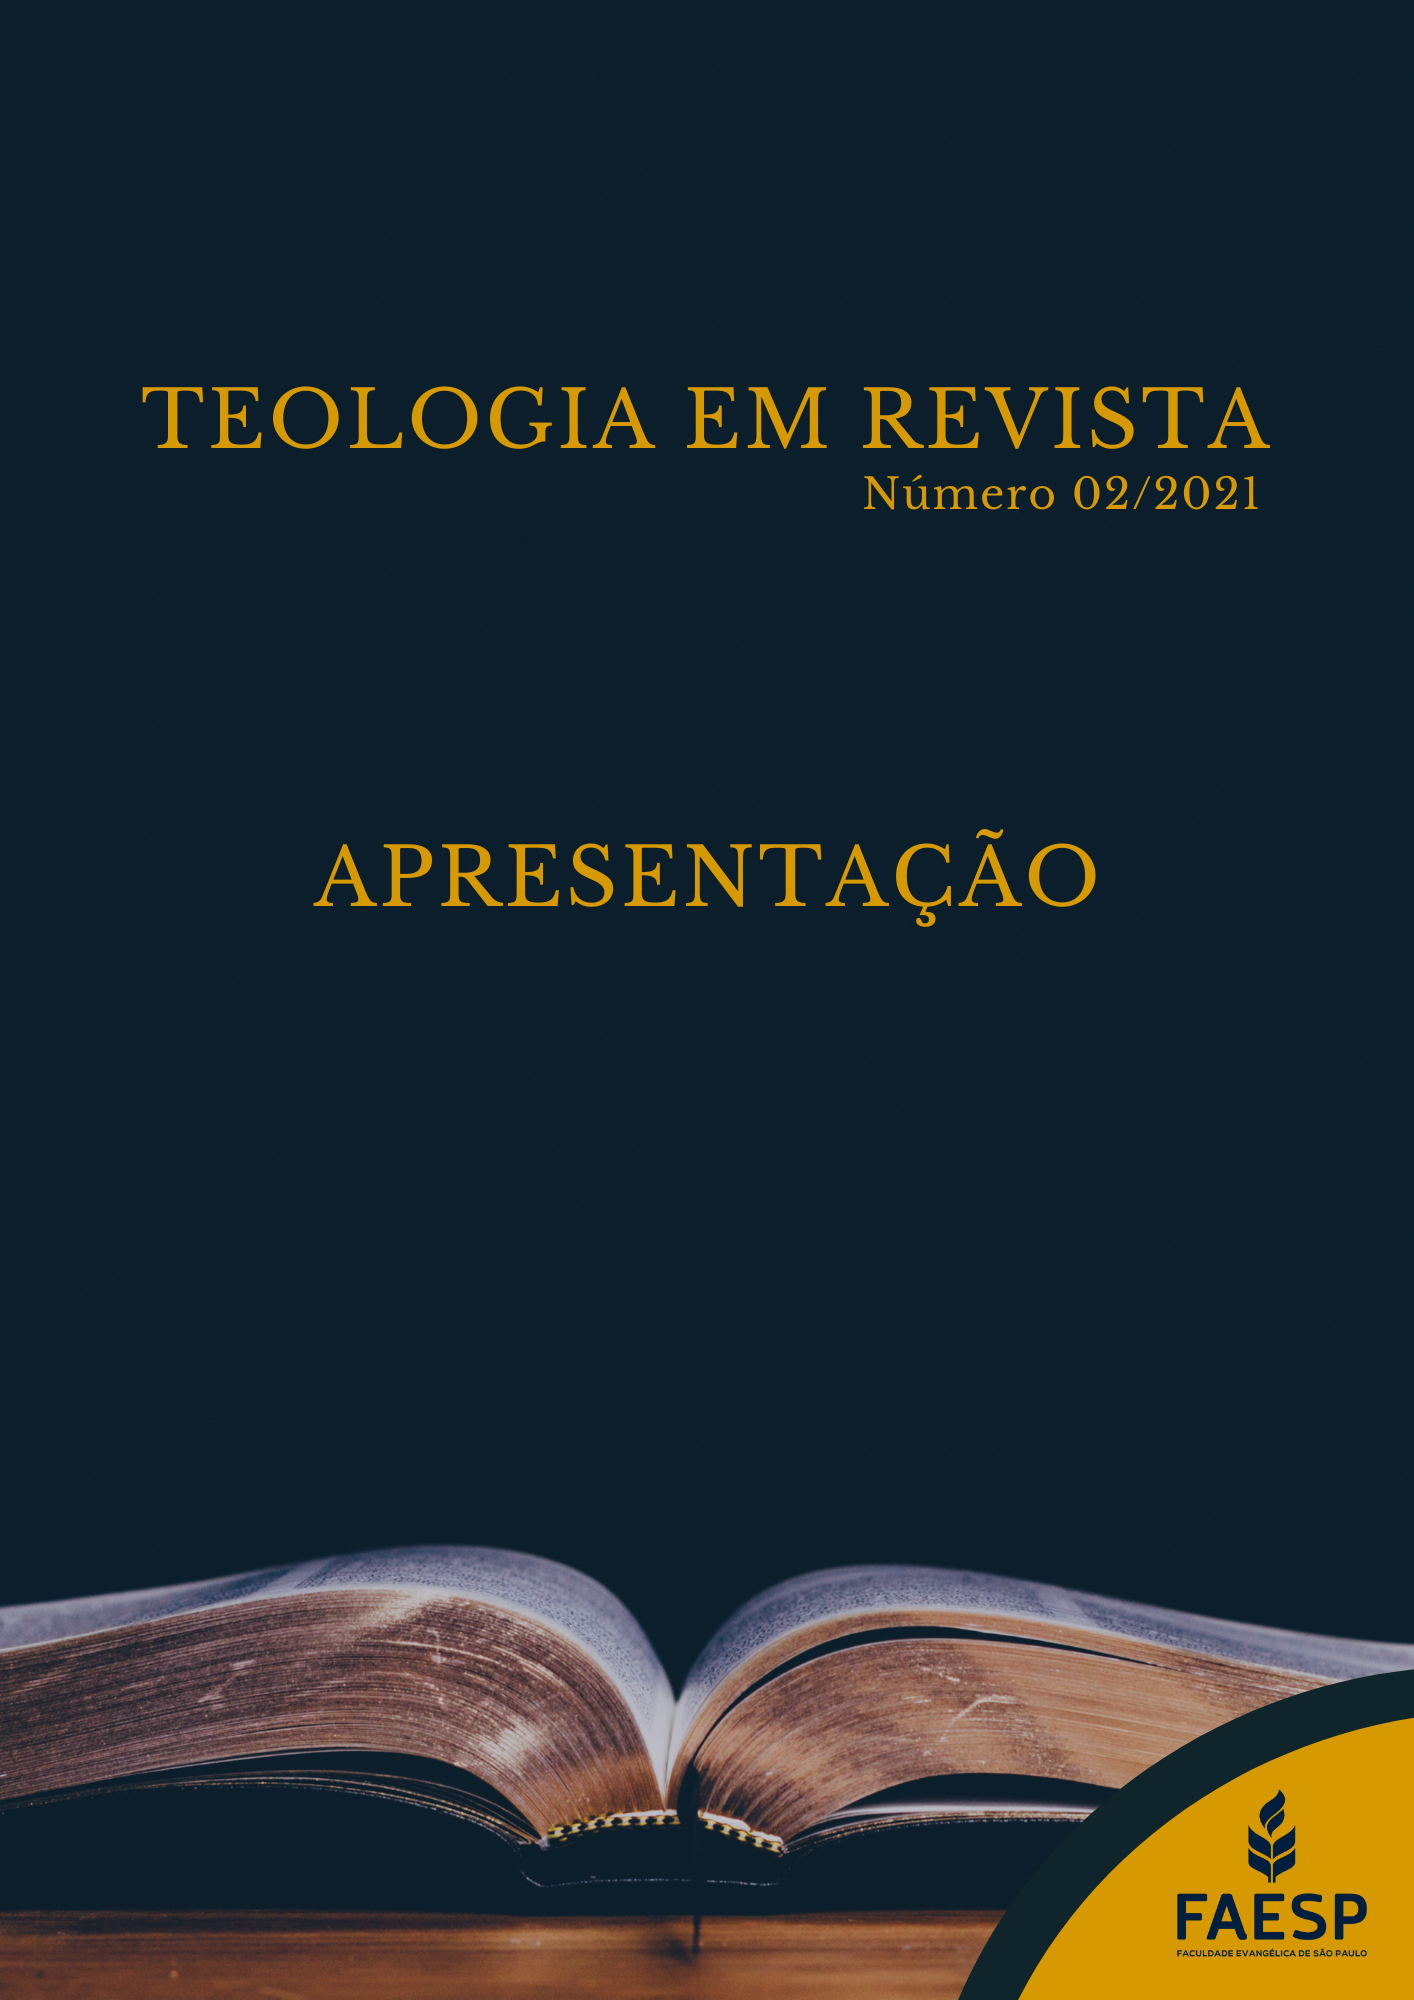 Capa da Teologia em Revista: apresentação